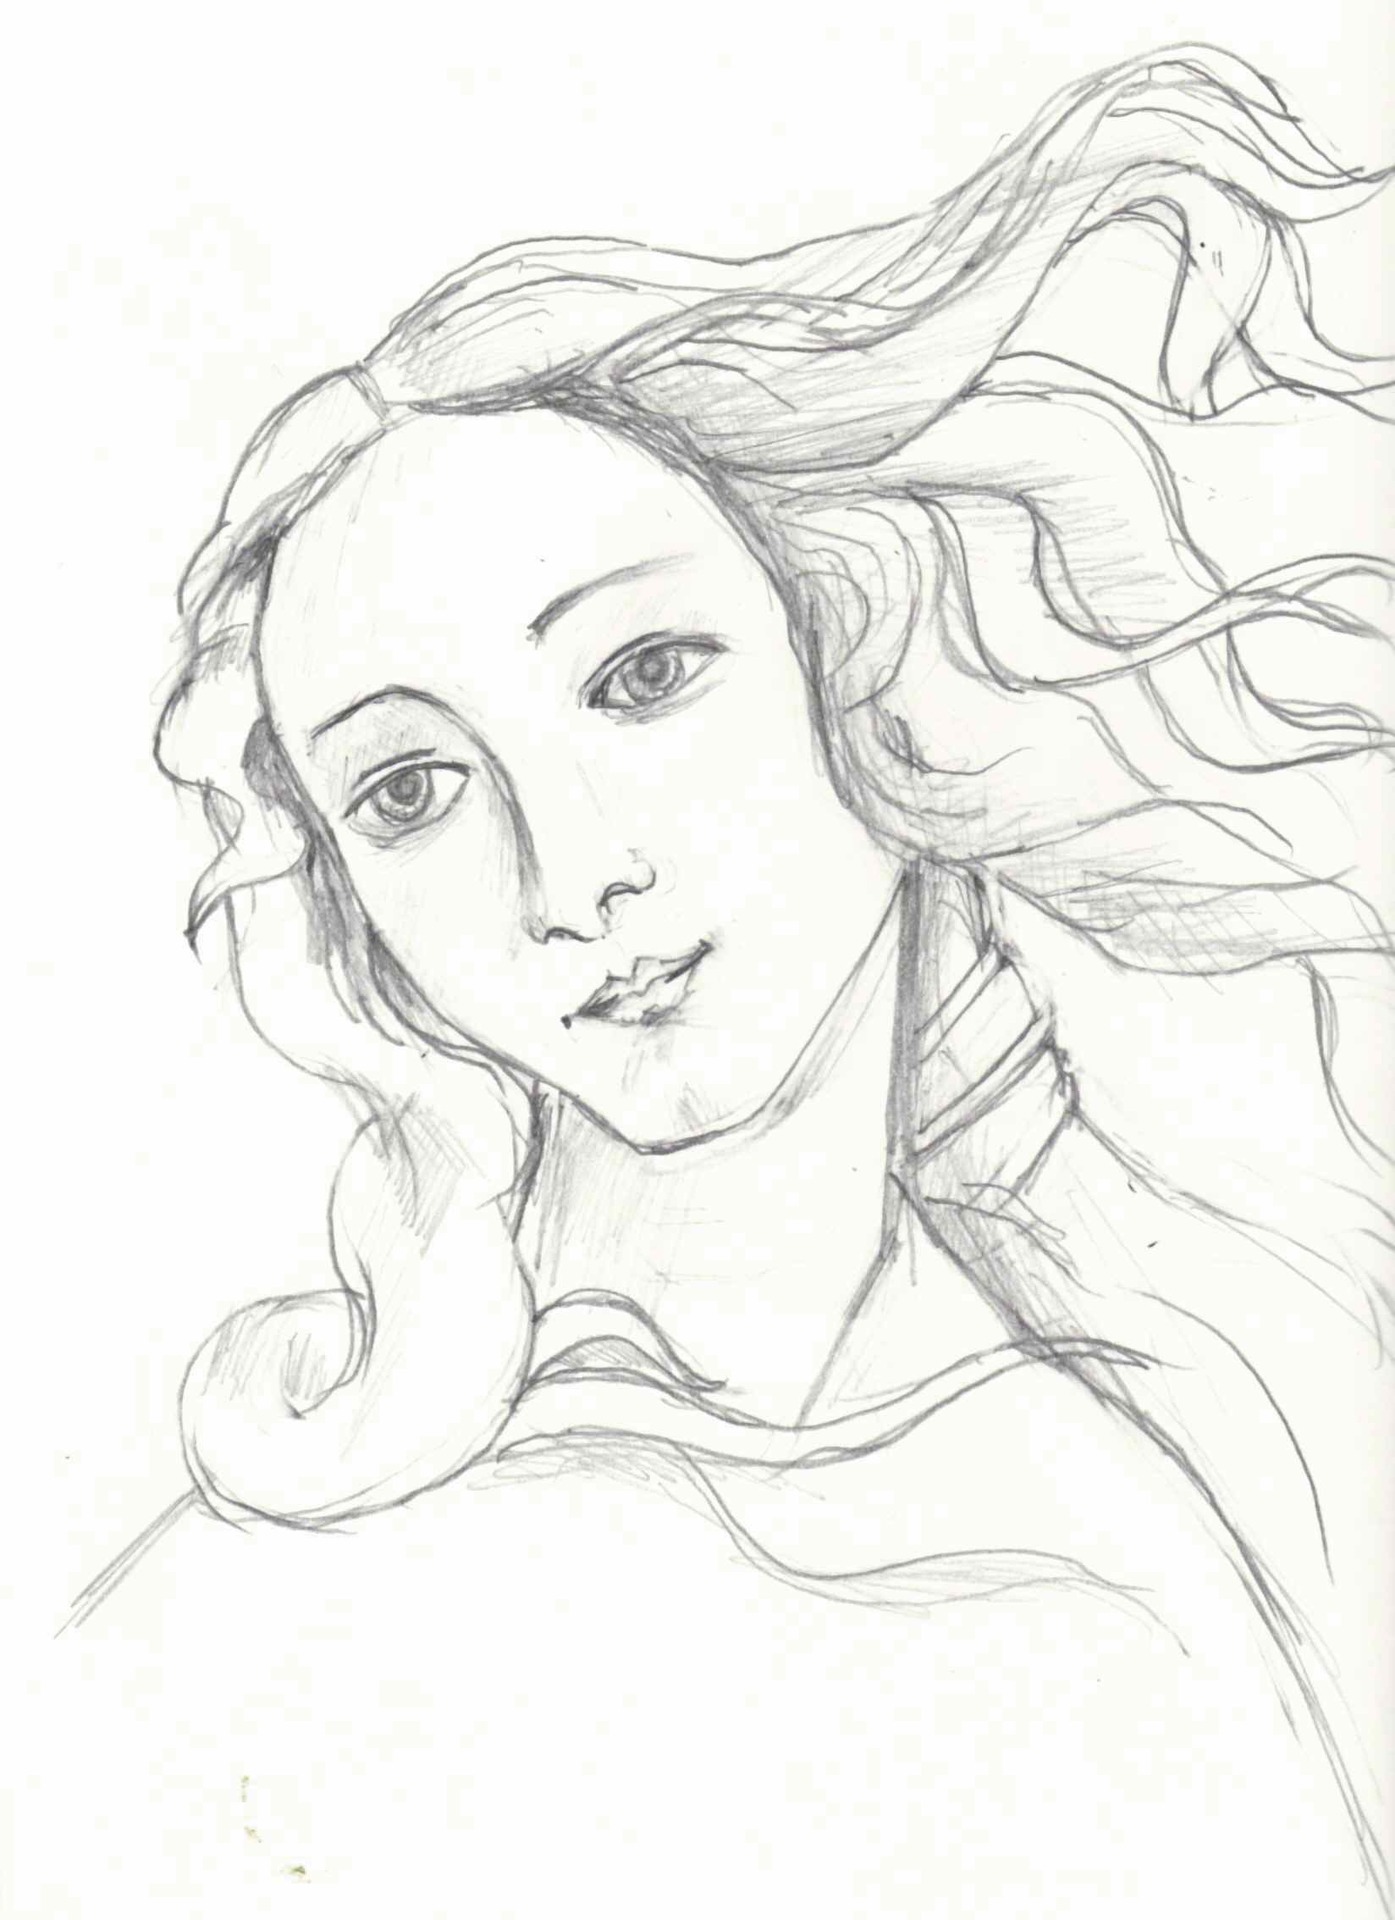 ヴィナスの誕生 模写 www.harfonline.com